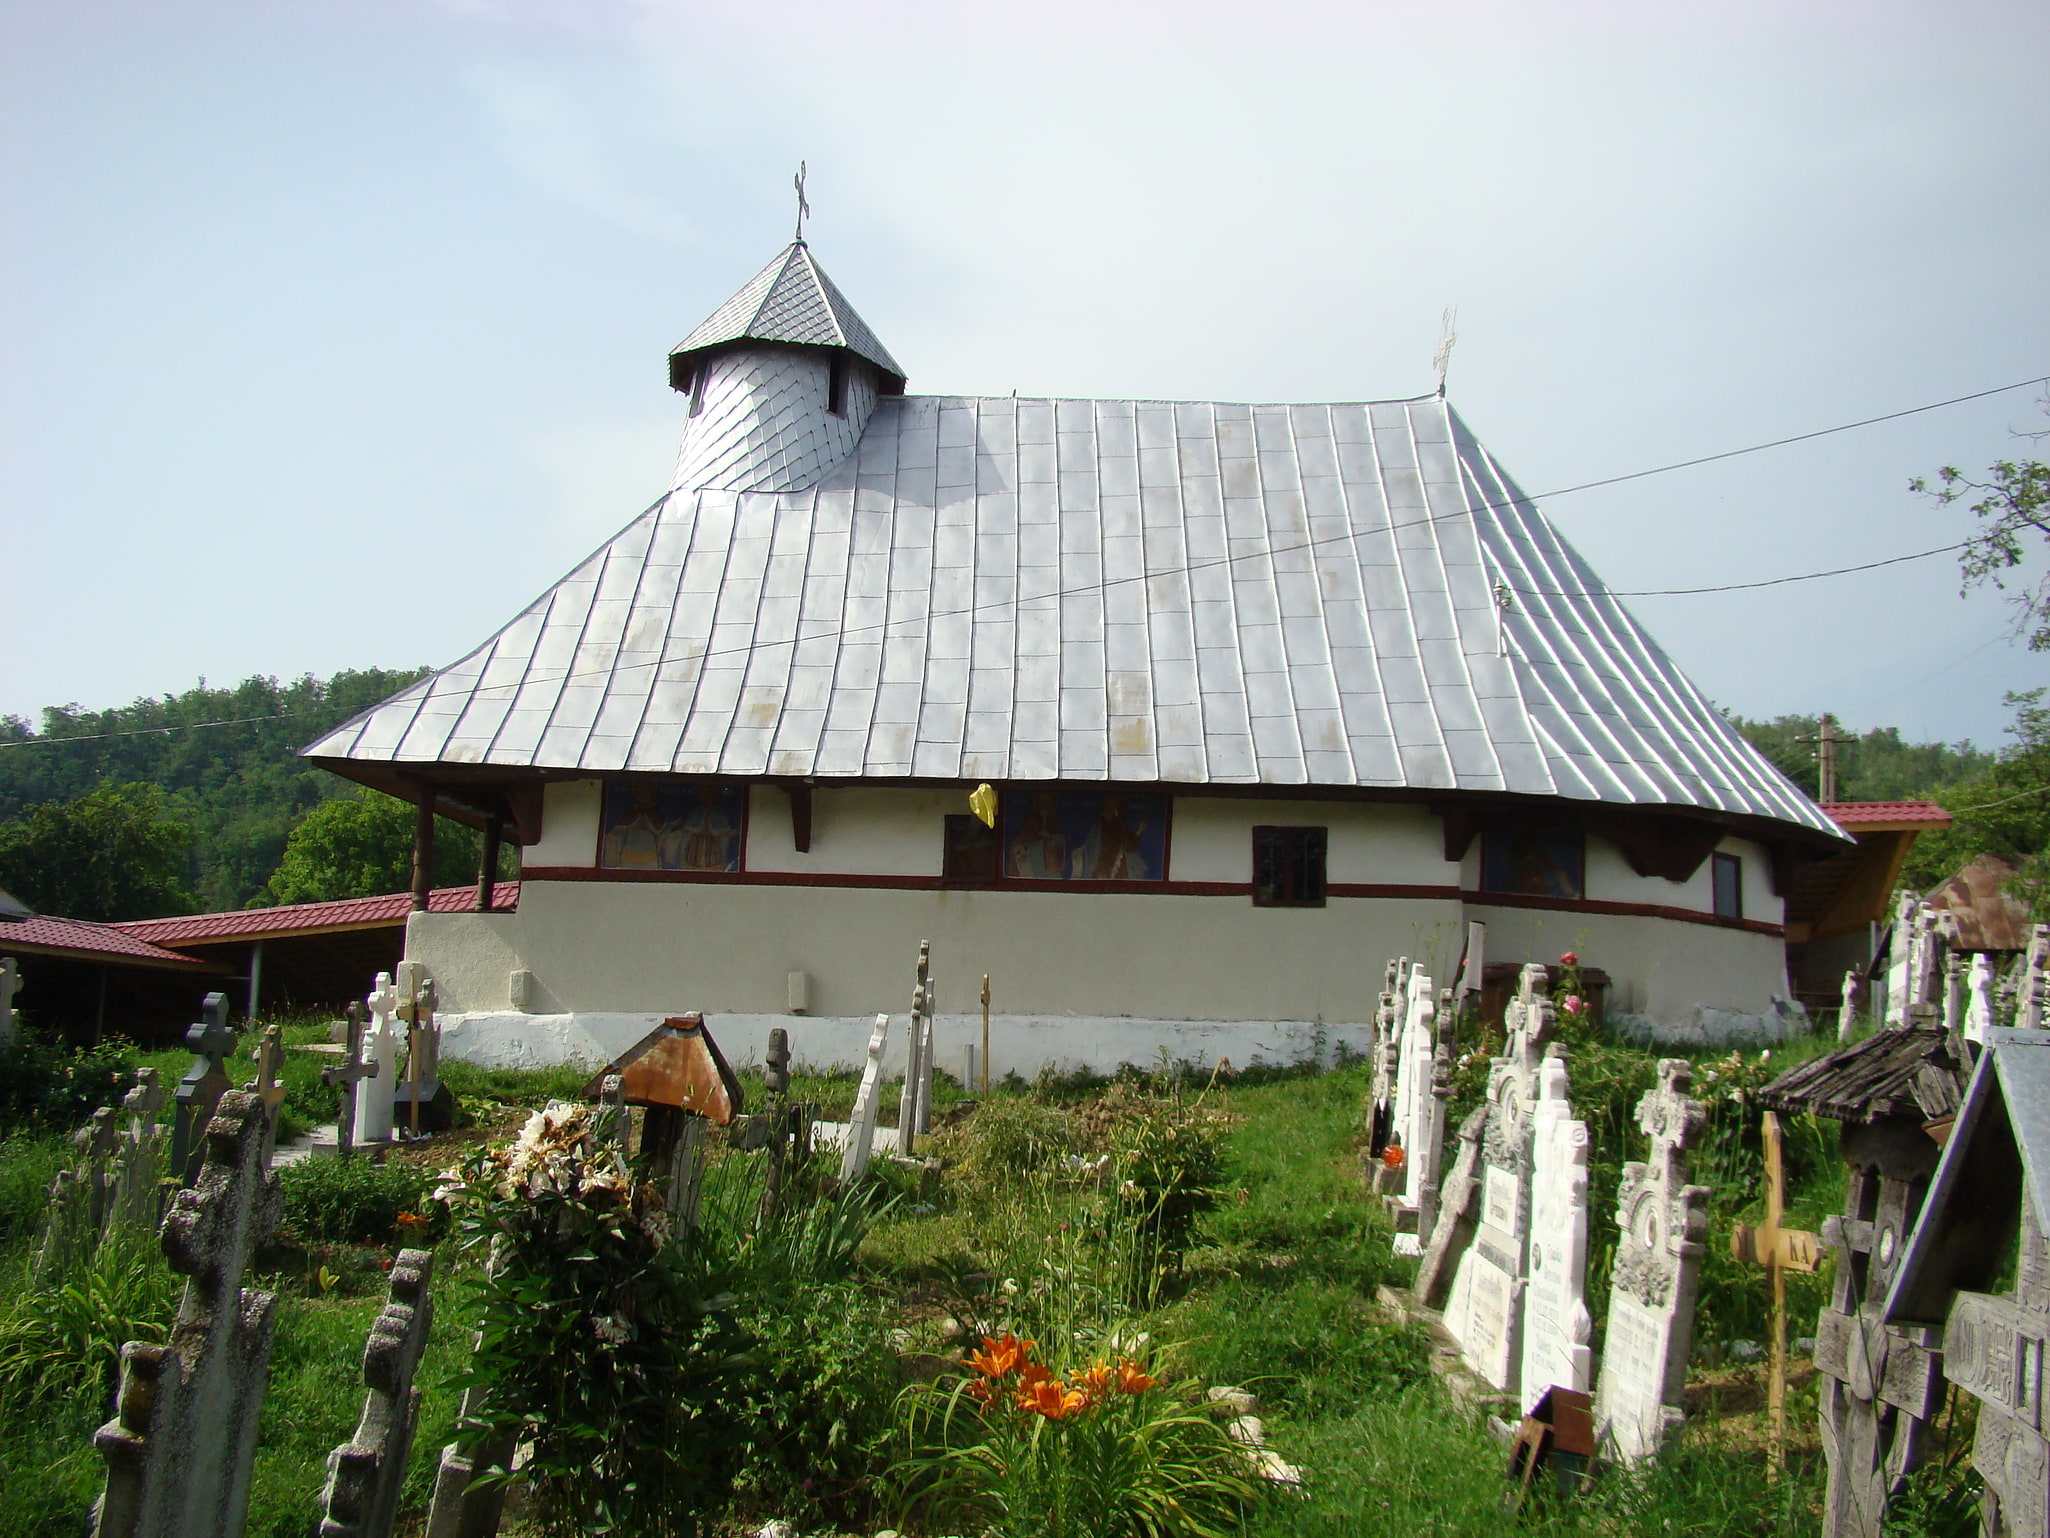 Baia de Fier, Roumanie